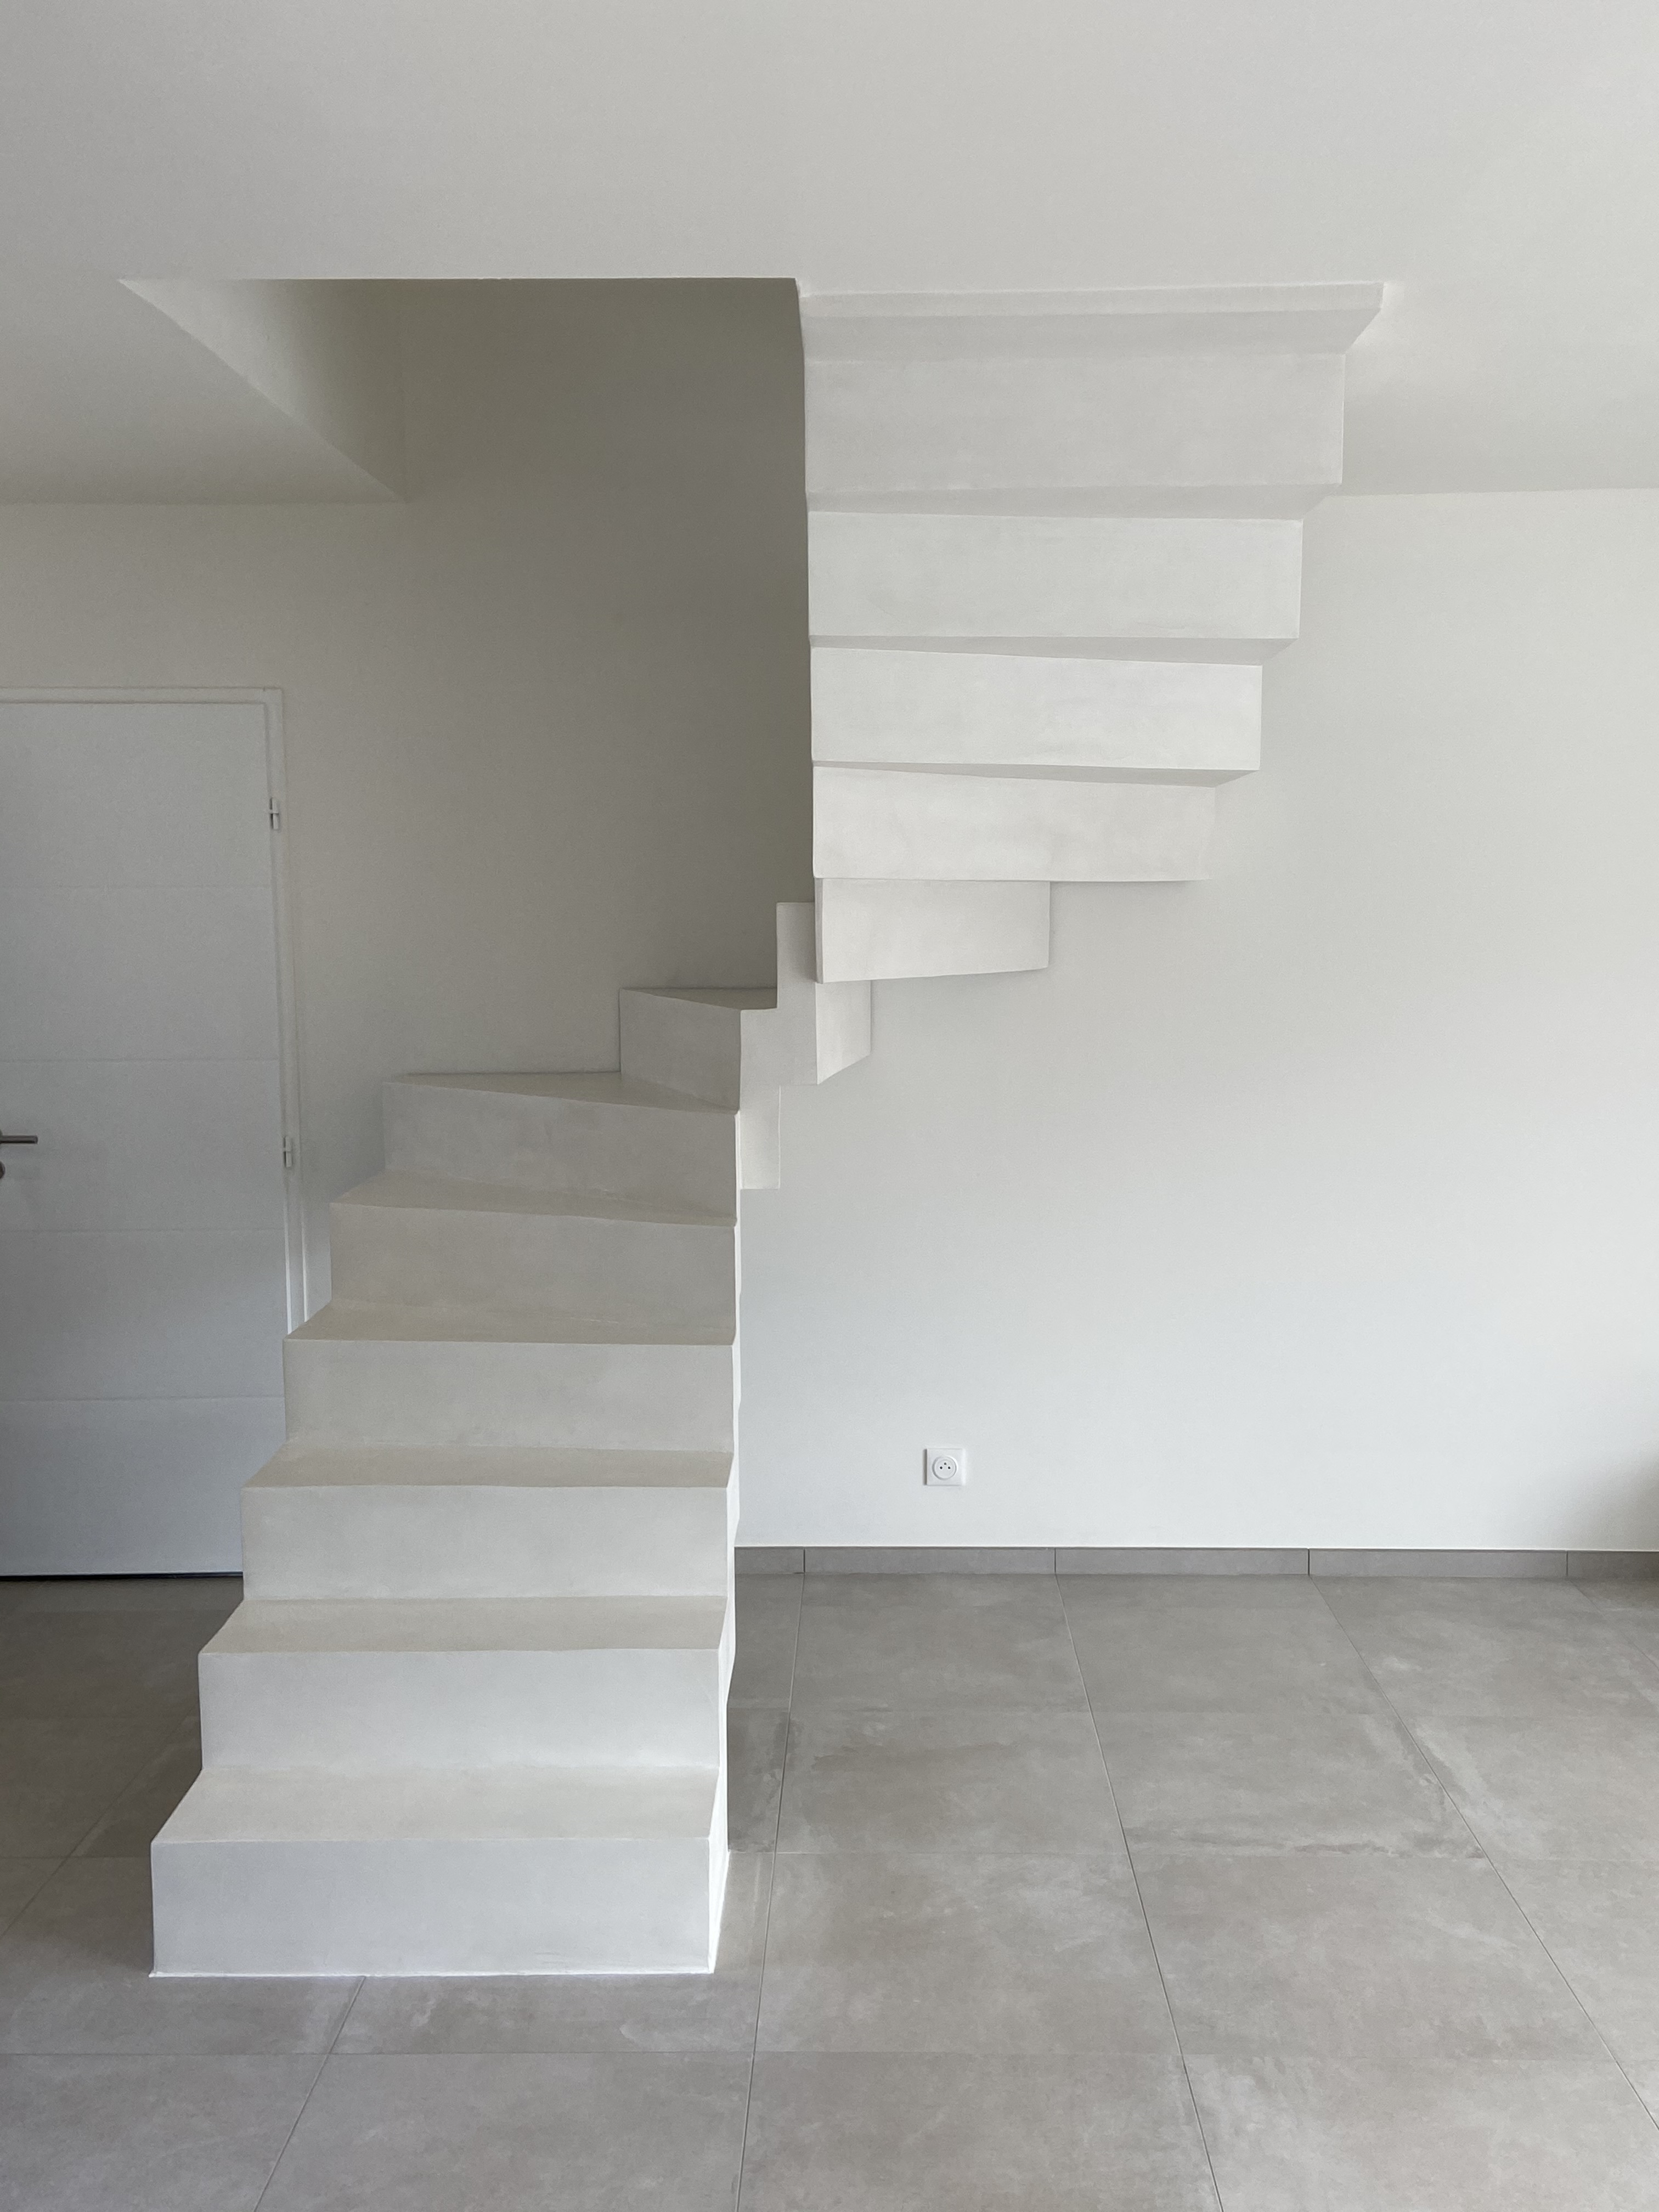 Escalier en béton ciré, finition vernis mat velouté, en région Occitanie. Matière saine et facile d'entretien.